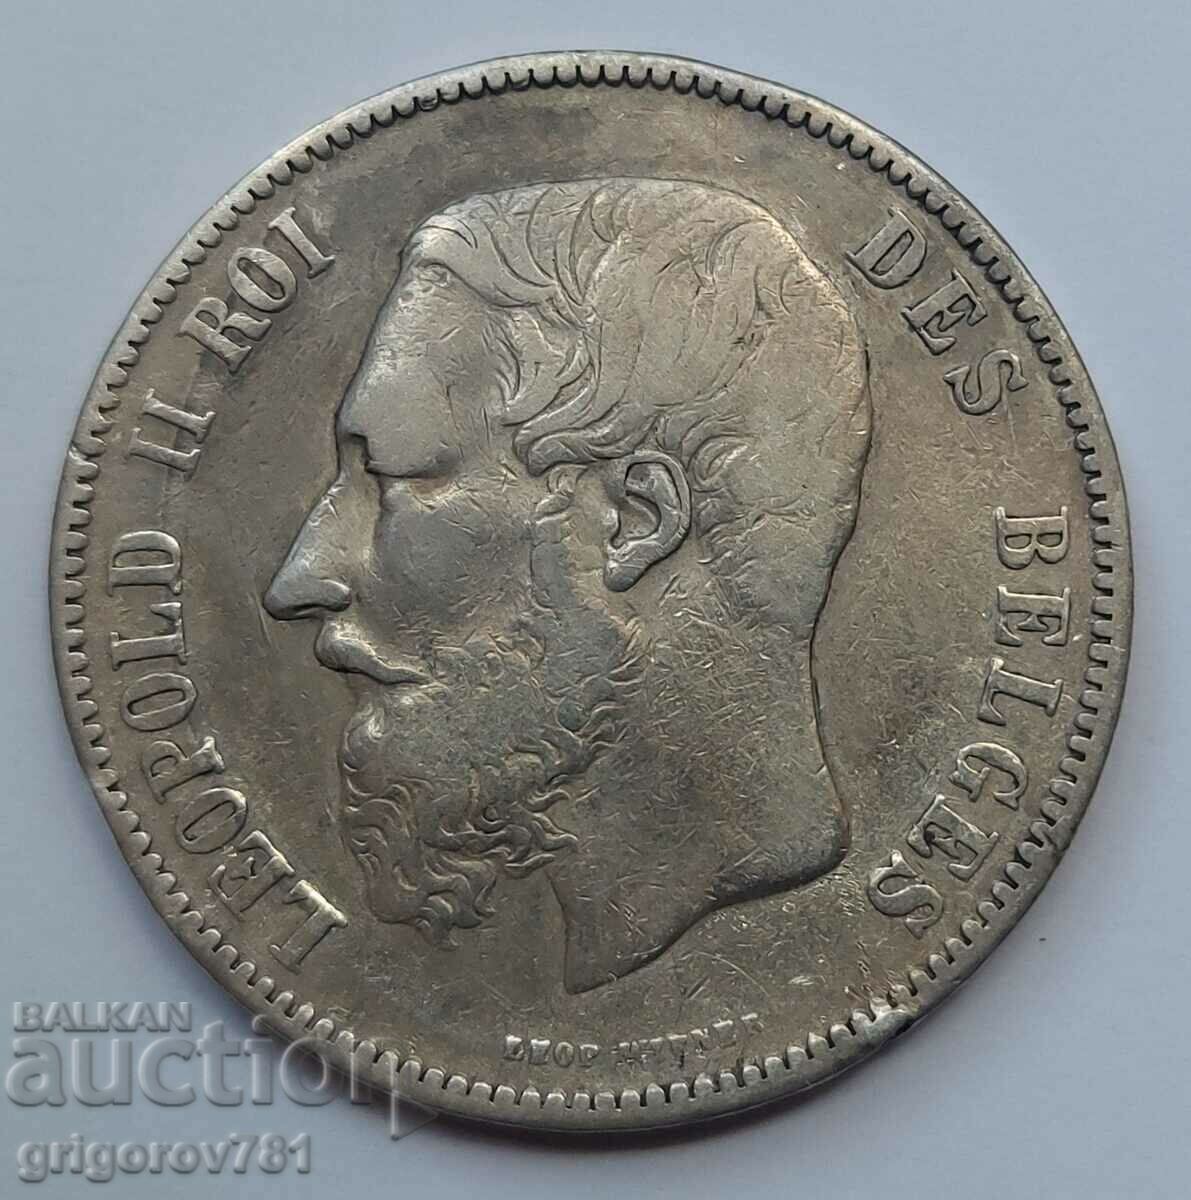 5 Francs Silver Belgium 1873 - Silver Coin #235